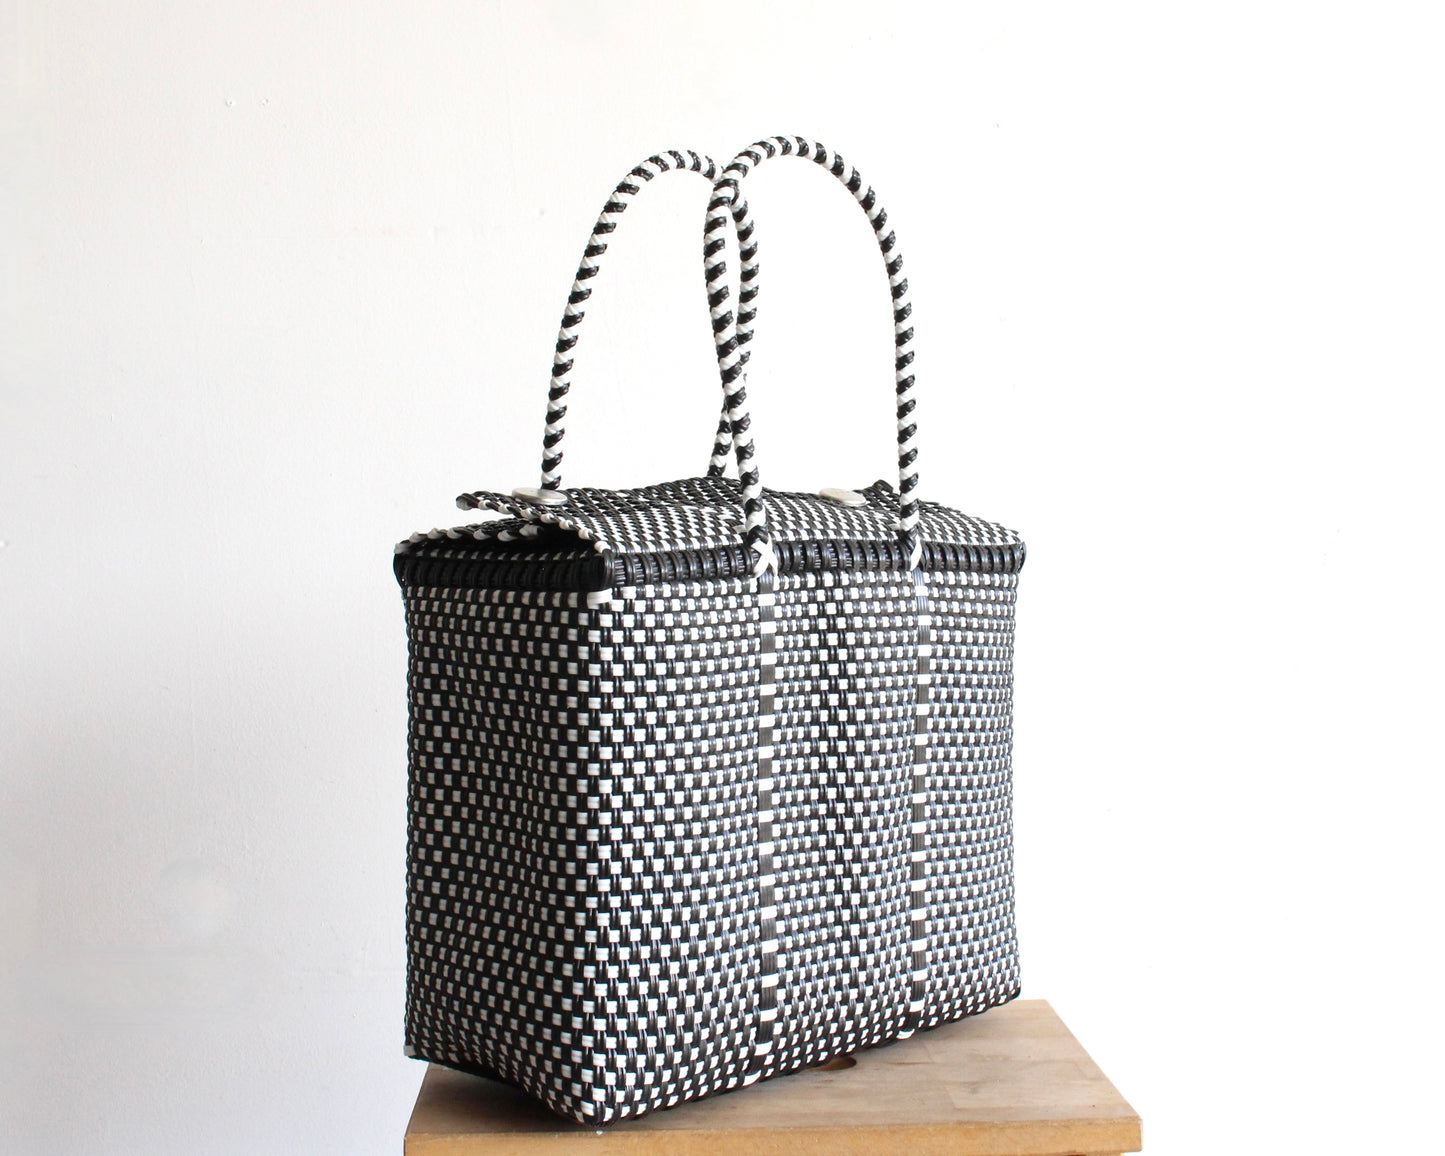 Black & White Handbag by MexiMexi